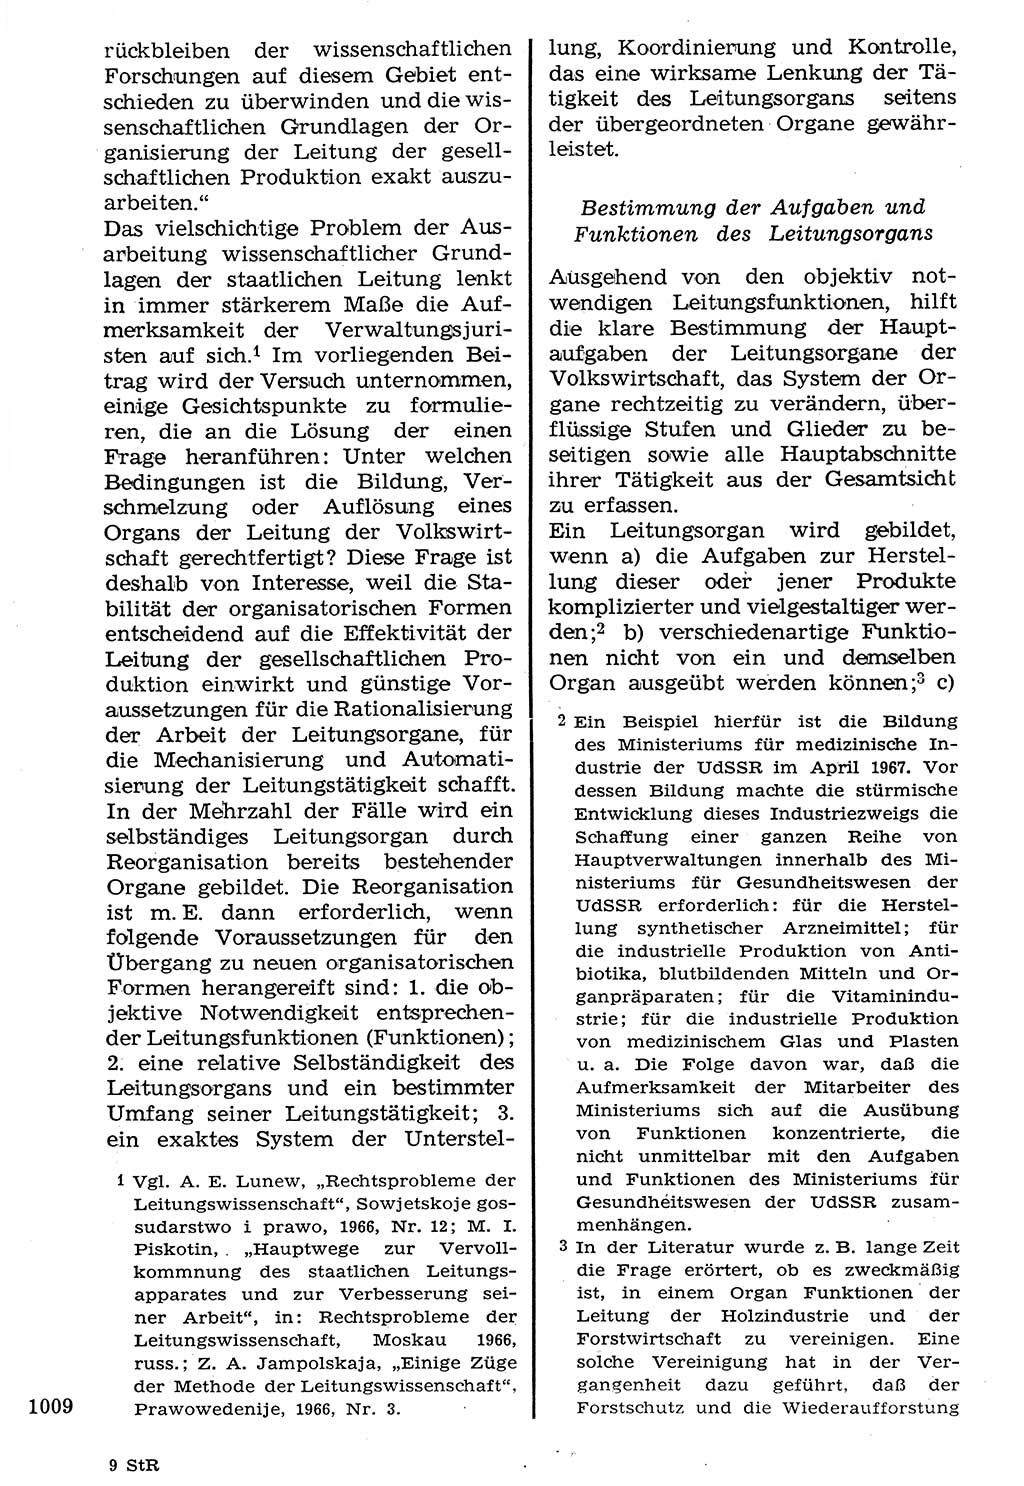 Staat und Recht (StuR), 17. Jahrgang [Deutsche Demokratische Republik (DDR)] 1968, Seite 1009 (StuR DDR 1968, S. 1009)